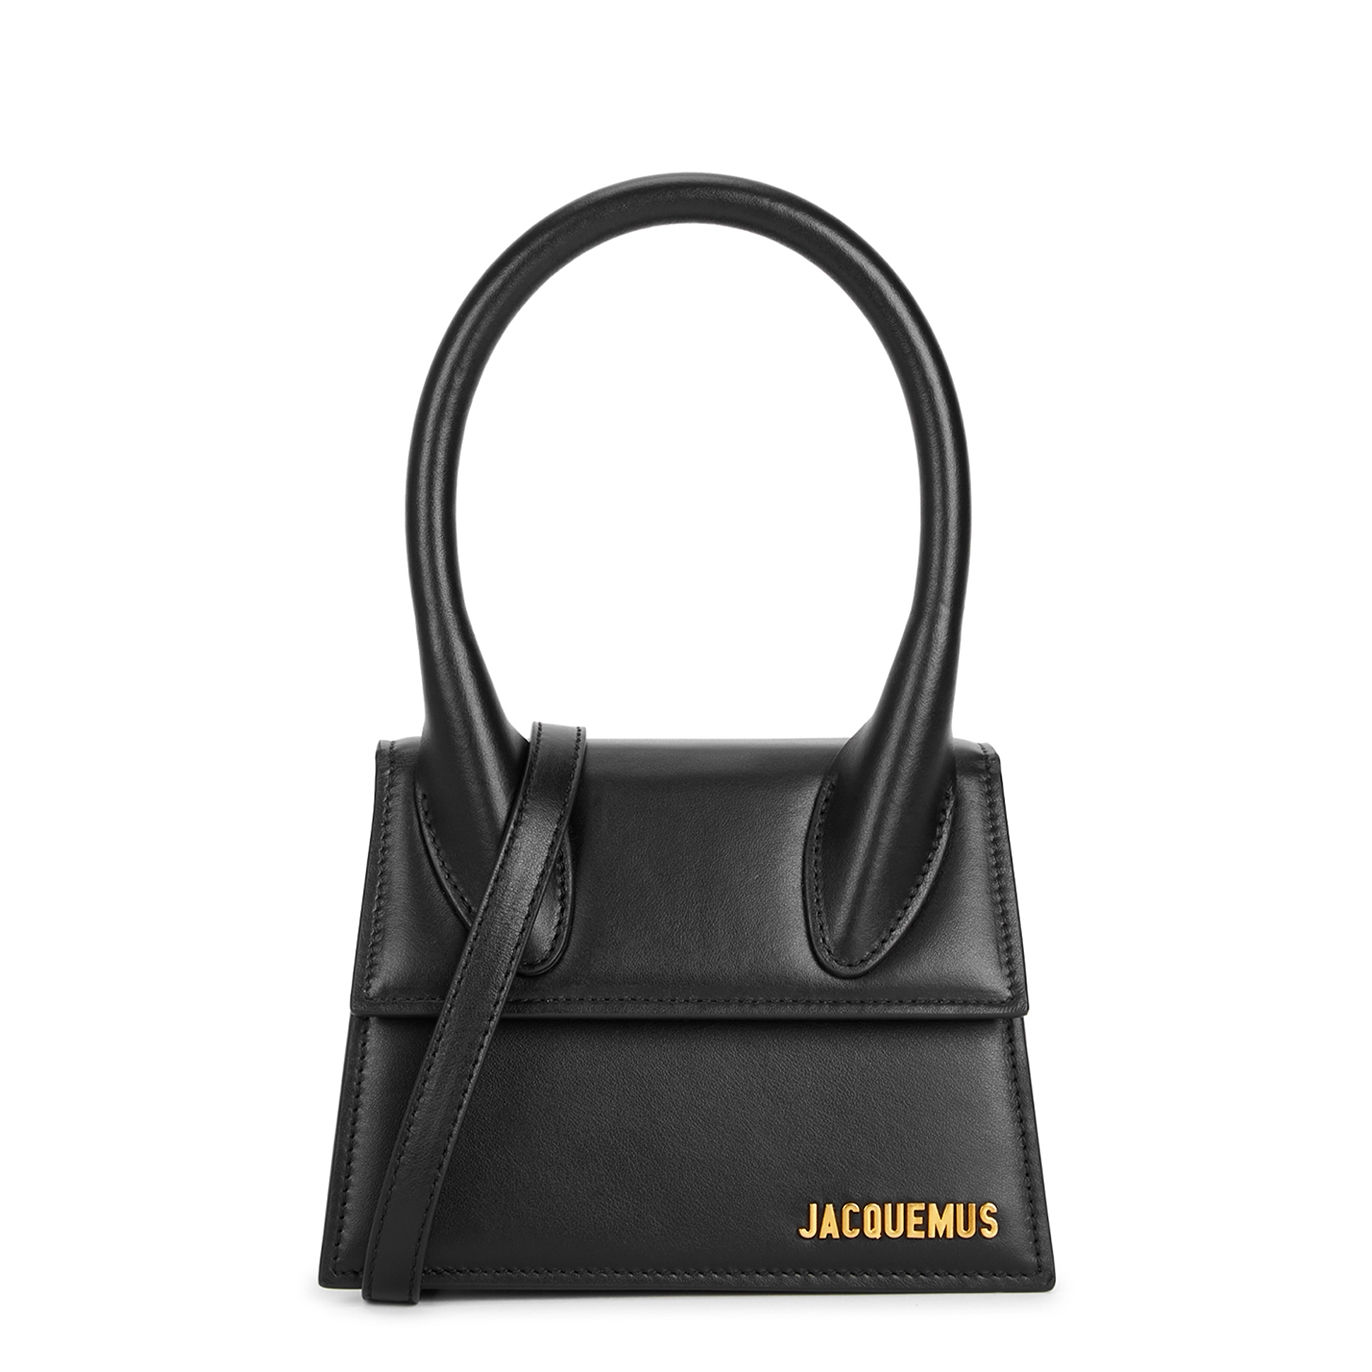 Jacquemus Le Chiquito Moyen Black Leather Top Handle Bag